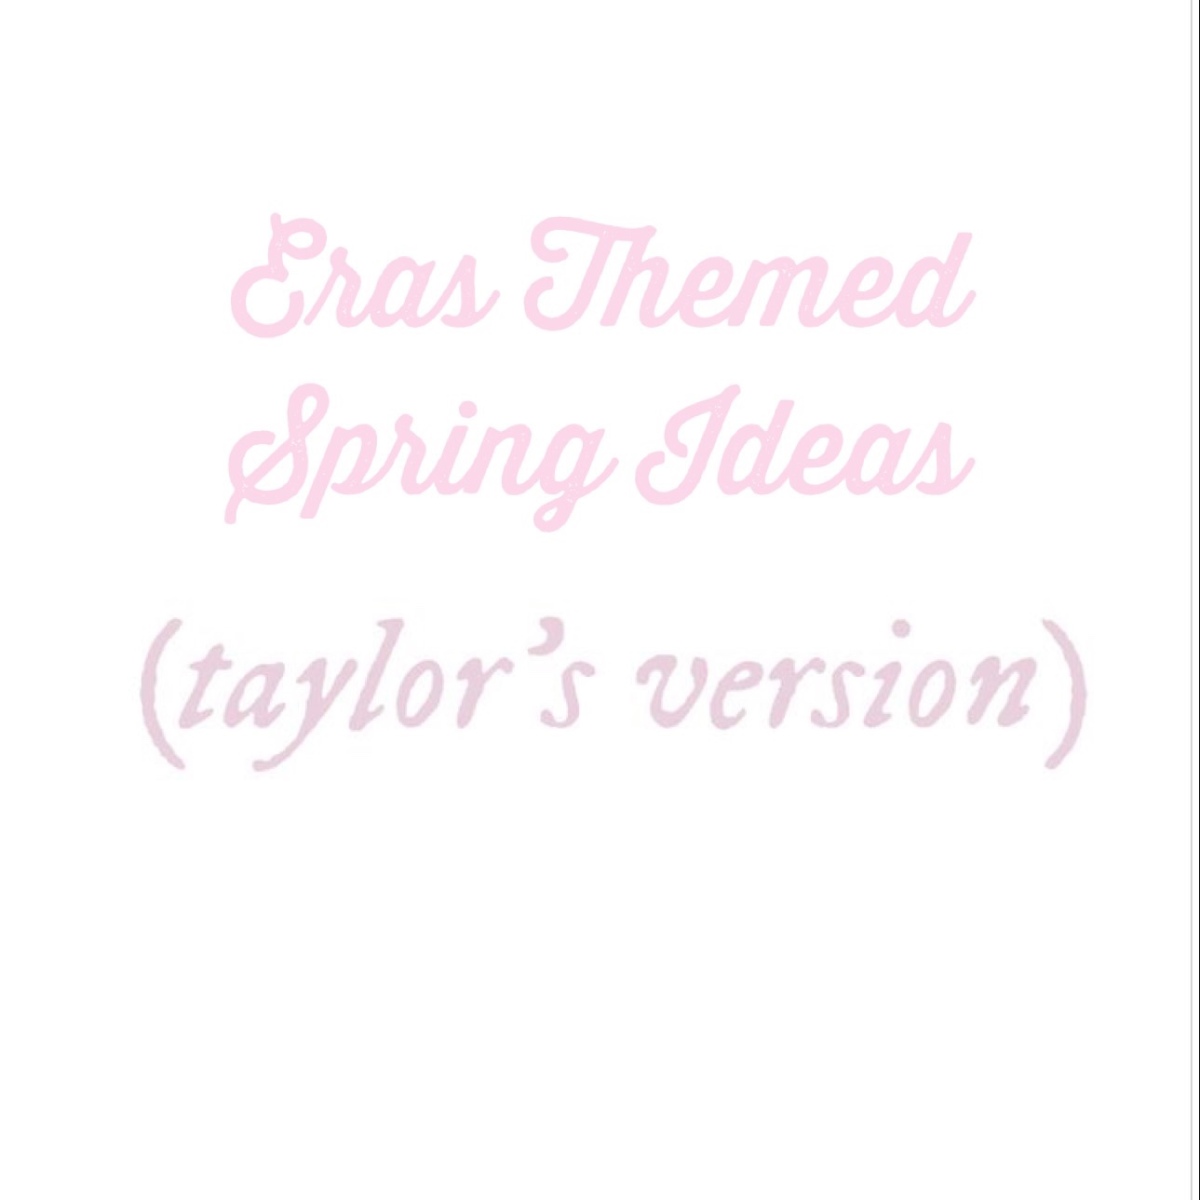 Eras Themed Spring Ideas